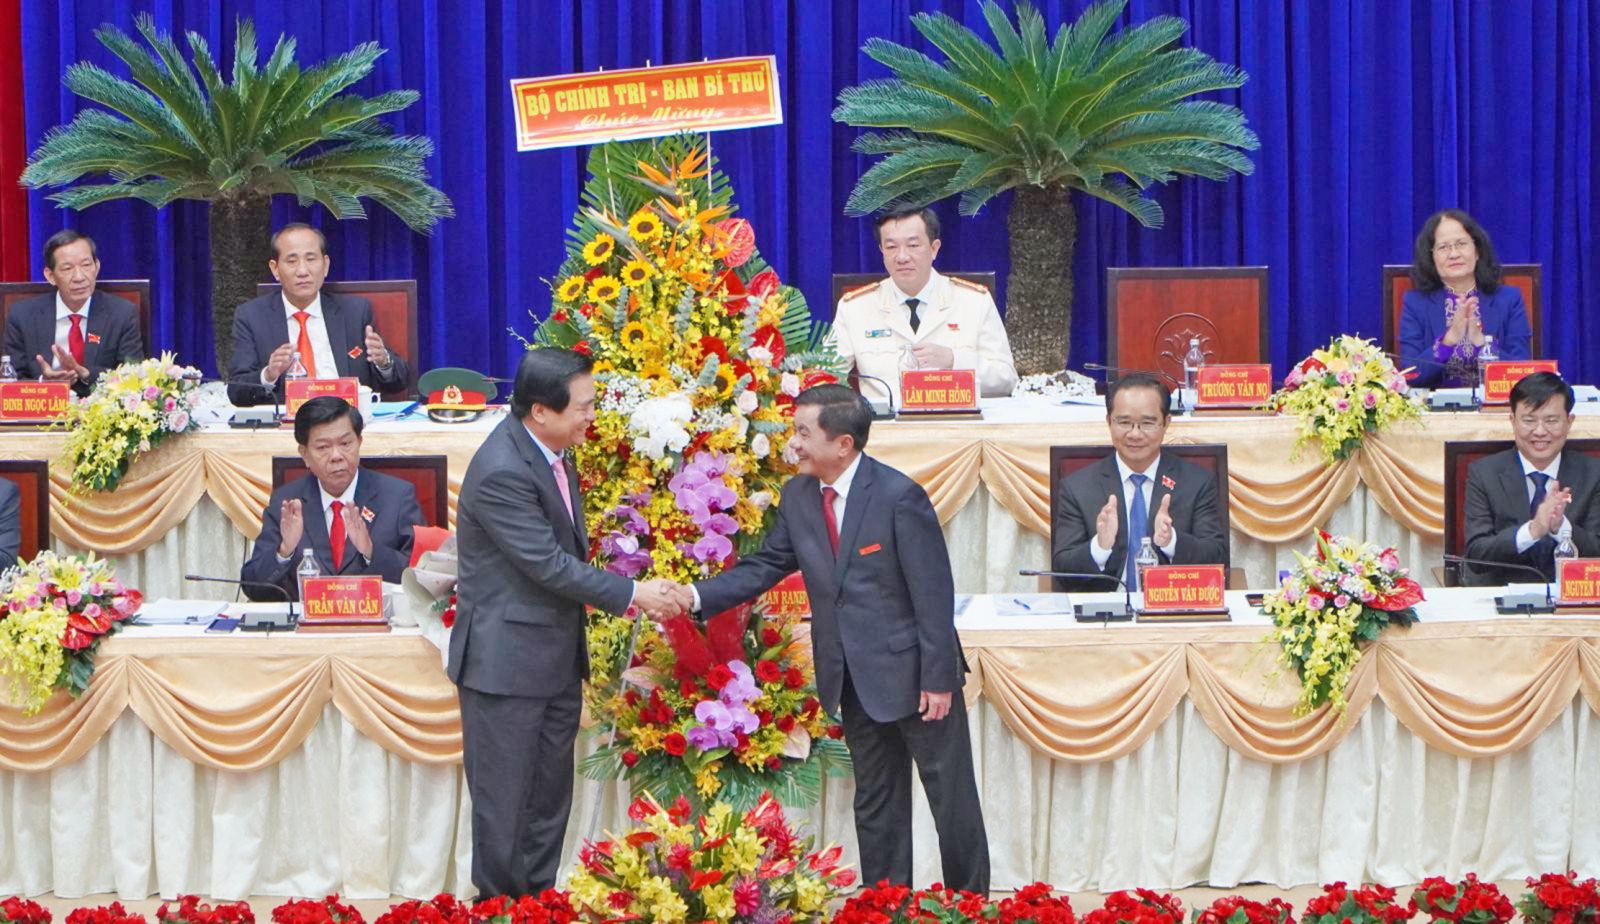 Toàn cảnh Đại hội đại biểu Đảng bộ tỉnh Long An khóa XI, nhiệm kỳ 2020-2025